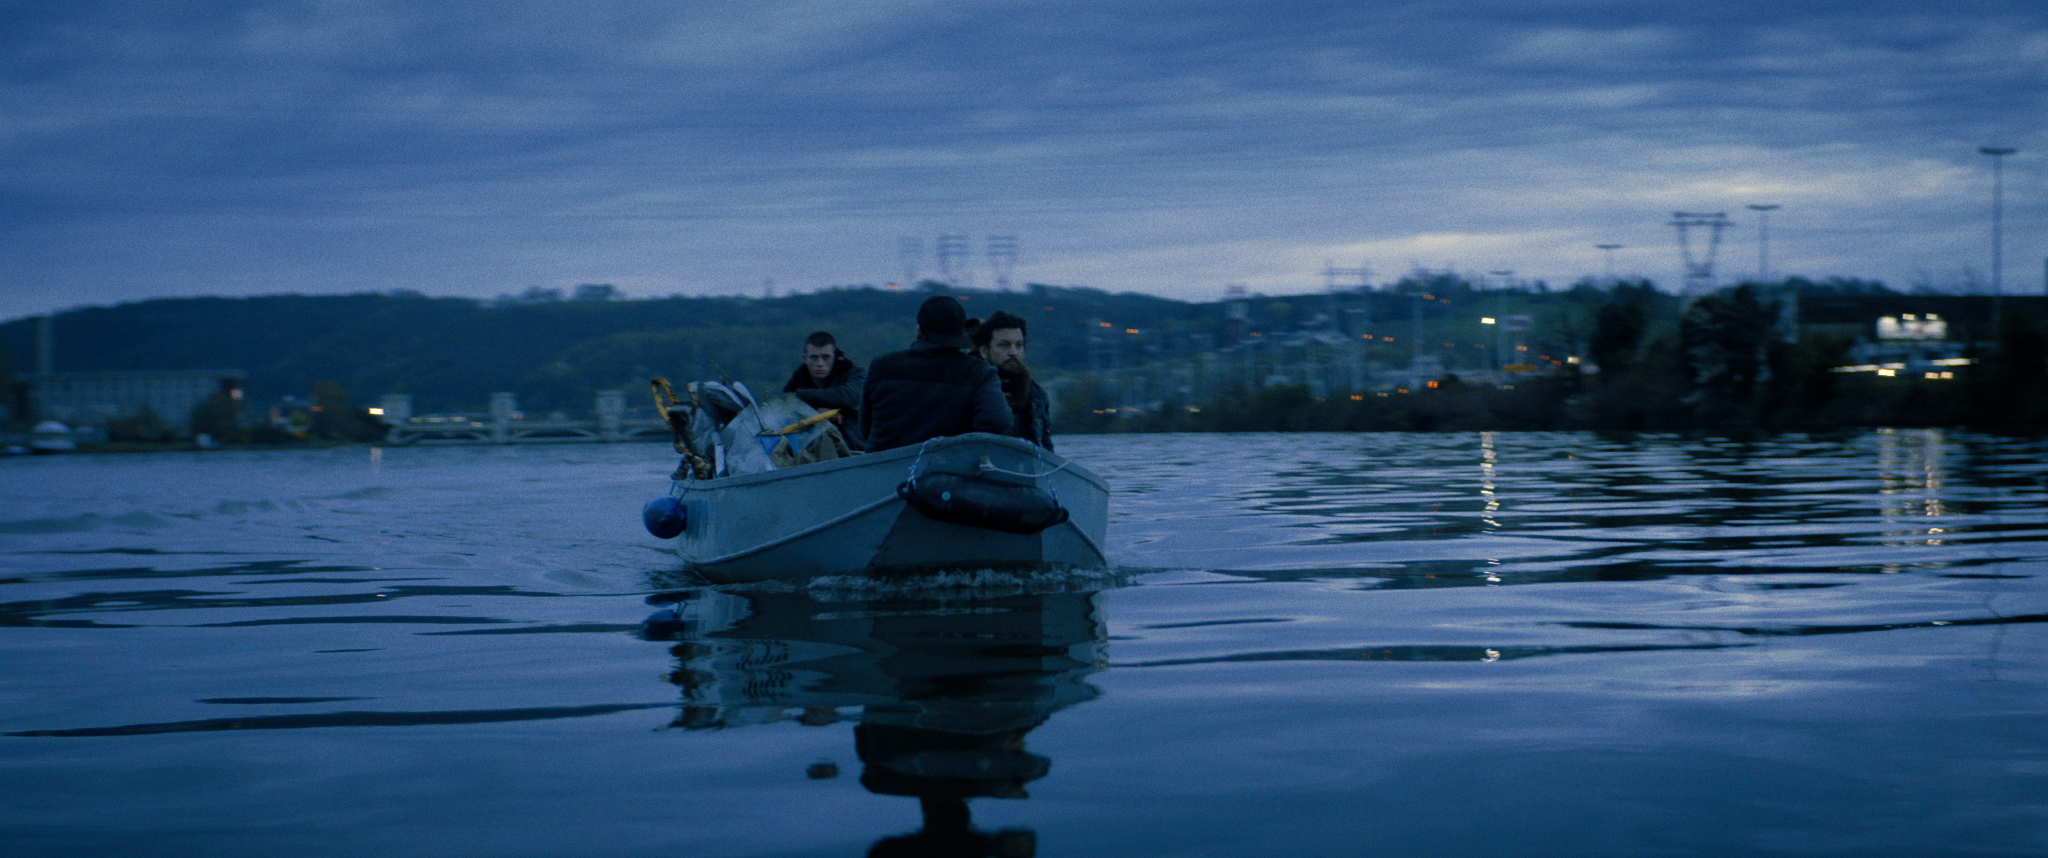 Filmstill aus "Kids Run": Im Dämmerlicht mehrere Männer in einem Boot auf dem Wasser, im Hintergrund beleuchtete Häuser und Strommasten in der hügeligen Landschaft.